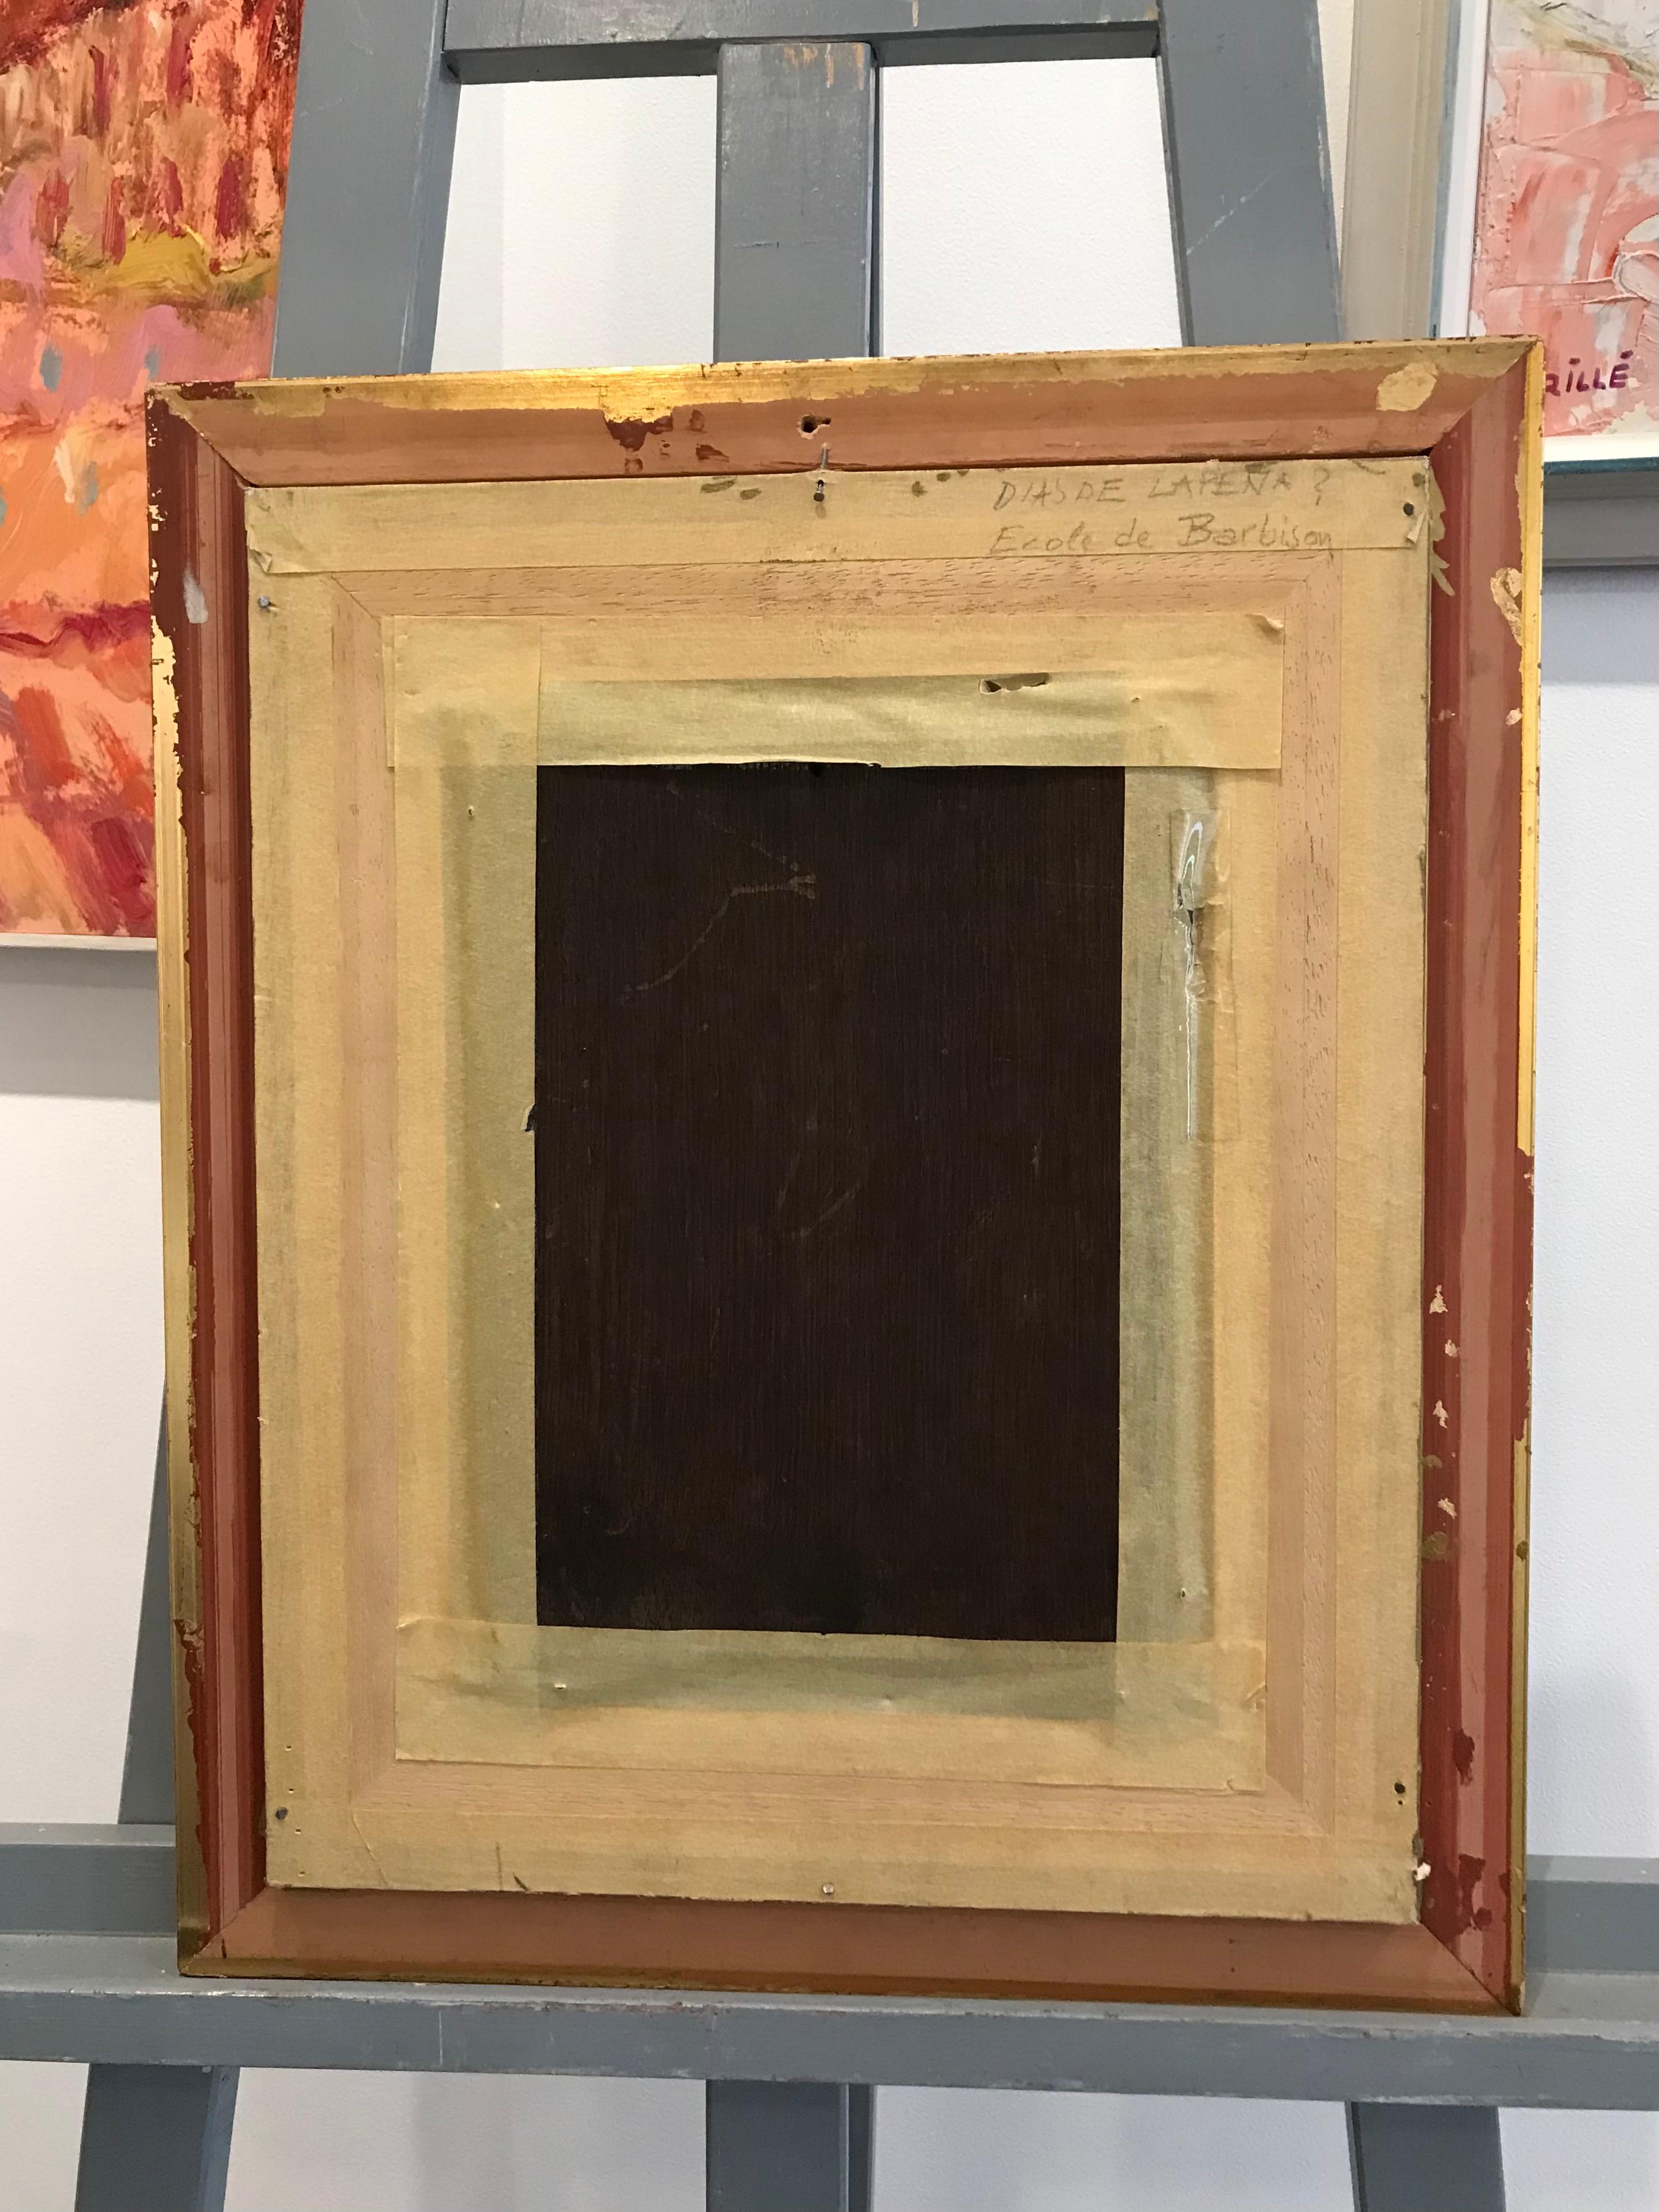 Barbuson School
Attribution

Work on wood
Gilded wood frame
41,5 x 35 x 2 cm